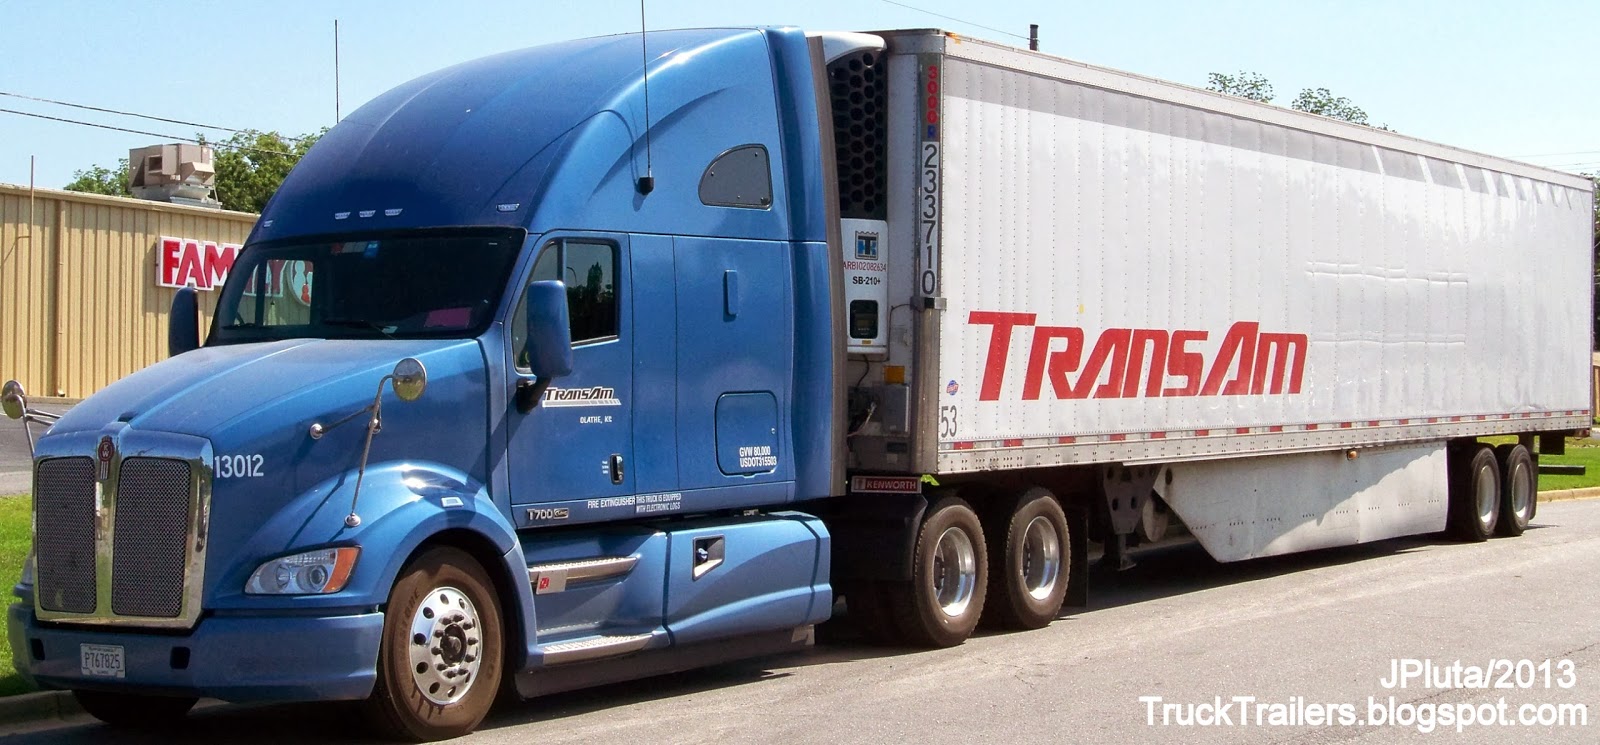 TRUCK TRAILER Transport Express Freight Logistic Diesel Mack Peterbilt 